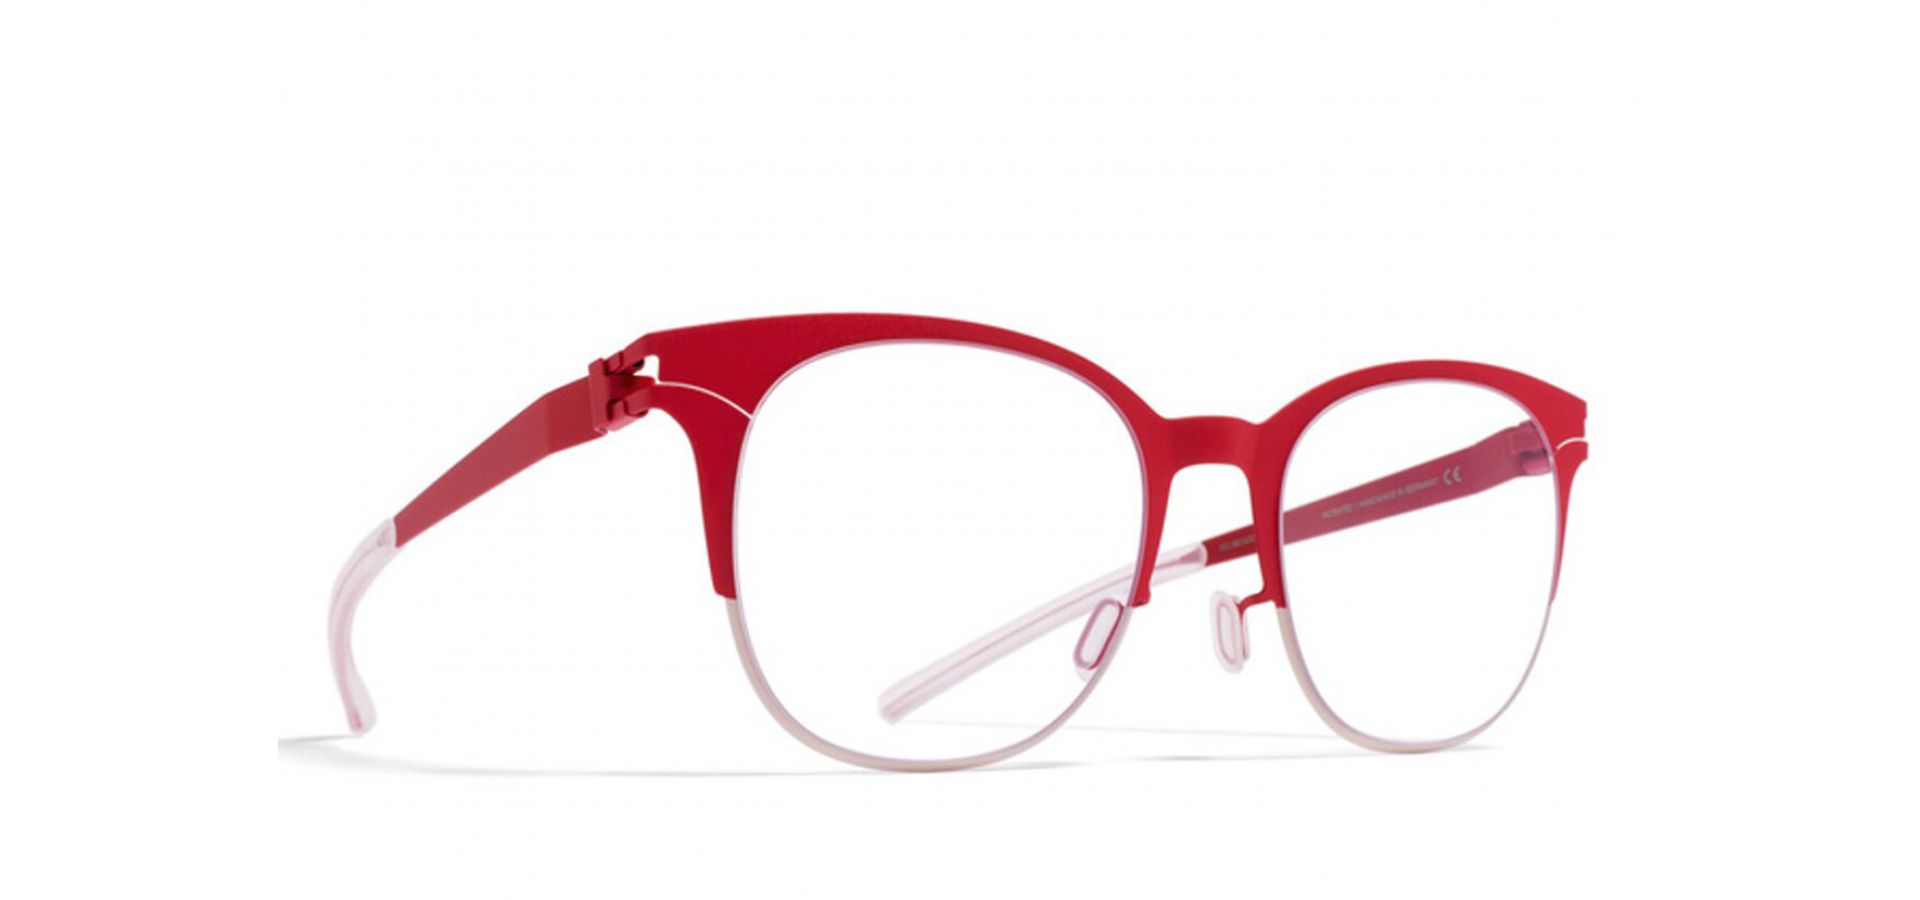 Korekcijska očala Mykita PATTI B6 RED/TAN: Velikost: 50/20/140, Spol: ženska, Material: titan